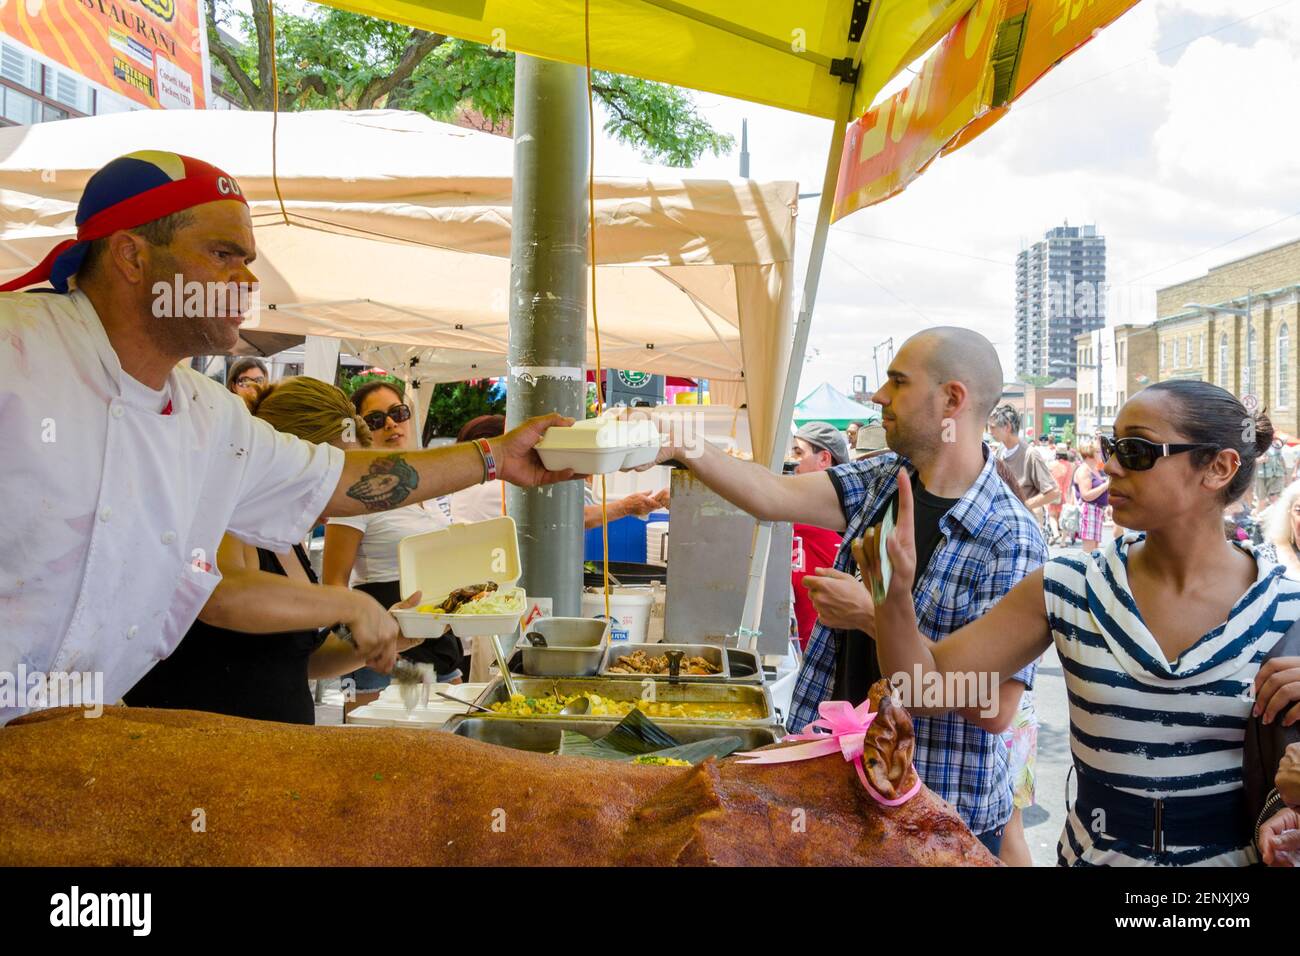 Salsa auf St. Saint Clair Festival Szenen: Ein Koch in einem Kopf-Tuch übergibt einen Behälter mit Lebensmitteln an einen Mann mit einem rasierten Kopf zur gleichen Zeit, dass h Stockfoto